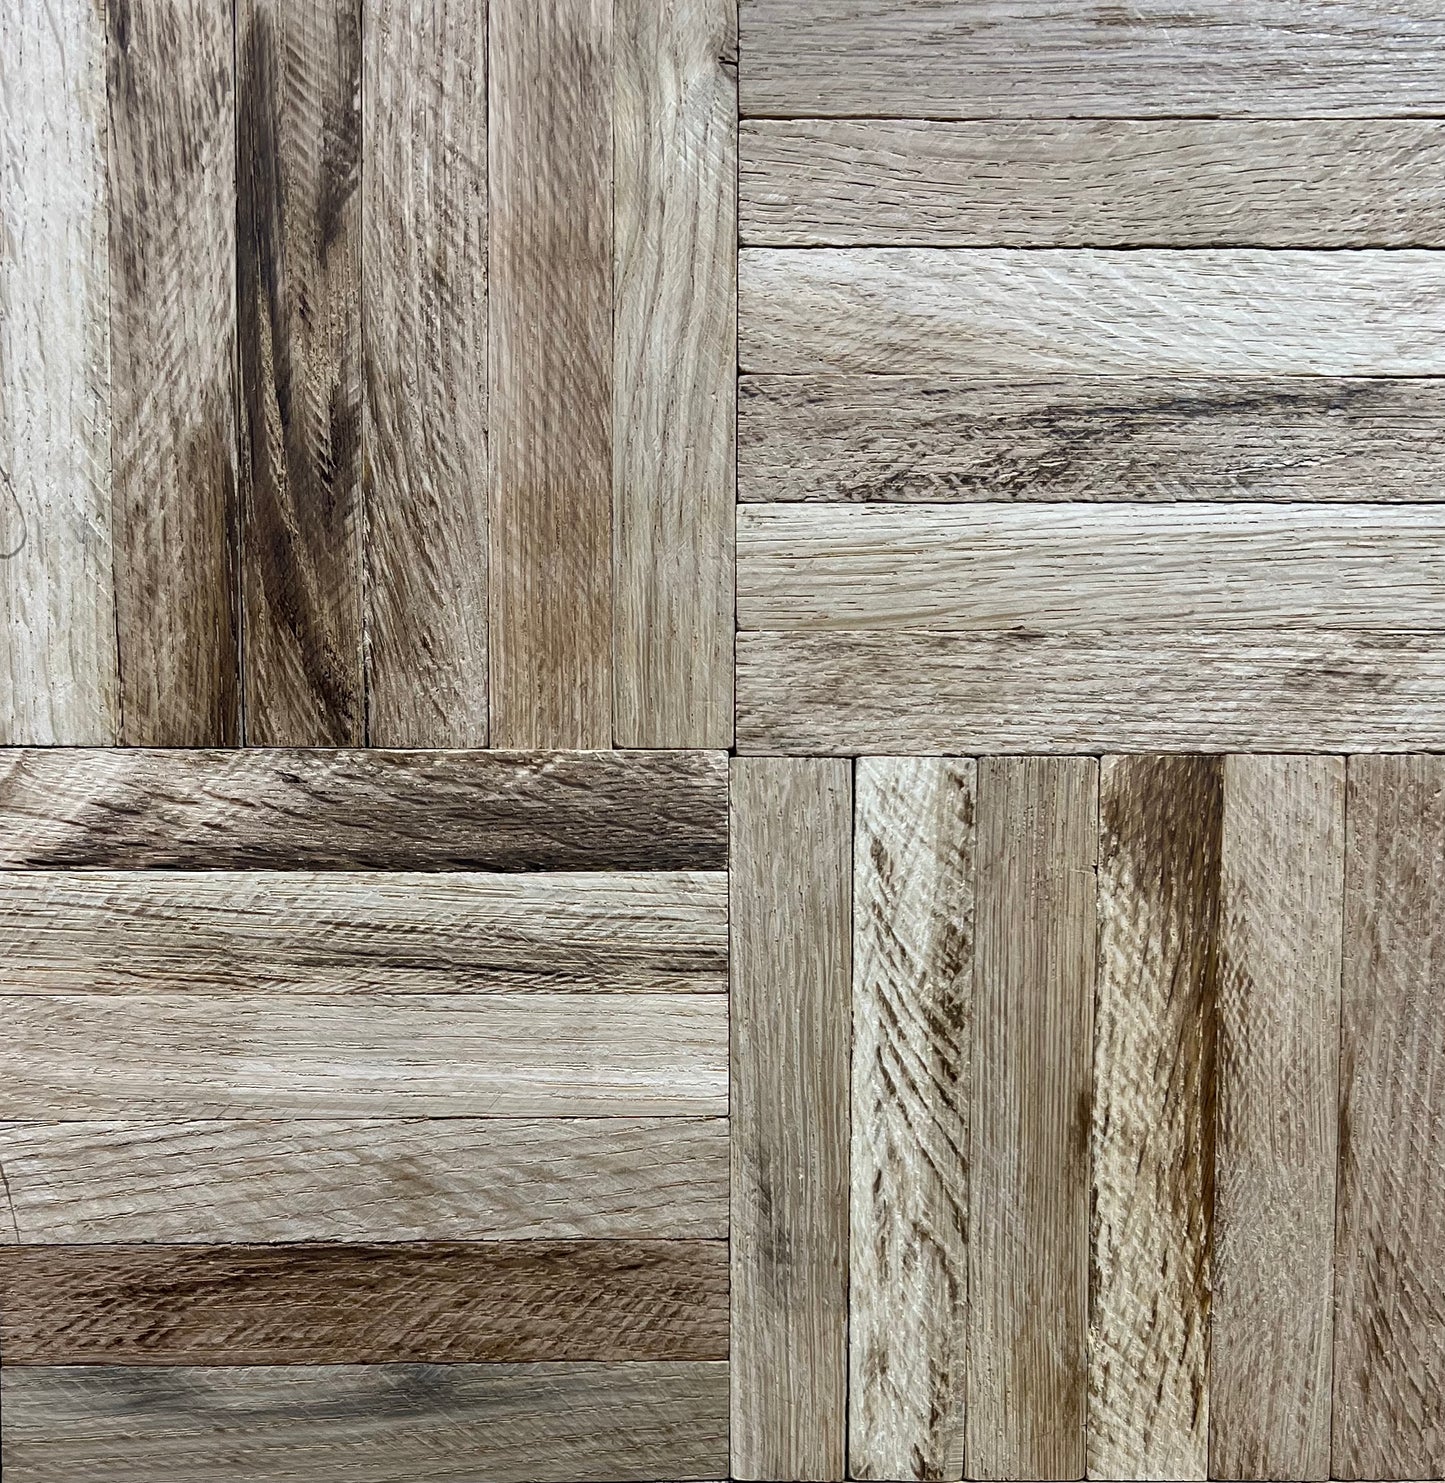 11" x 11" x 5/16" Solid White Oak Unfinished 6-slat Parquet Hardwood Flooring